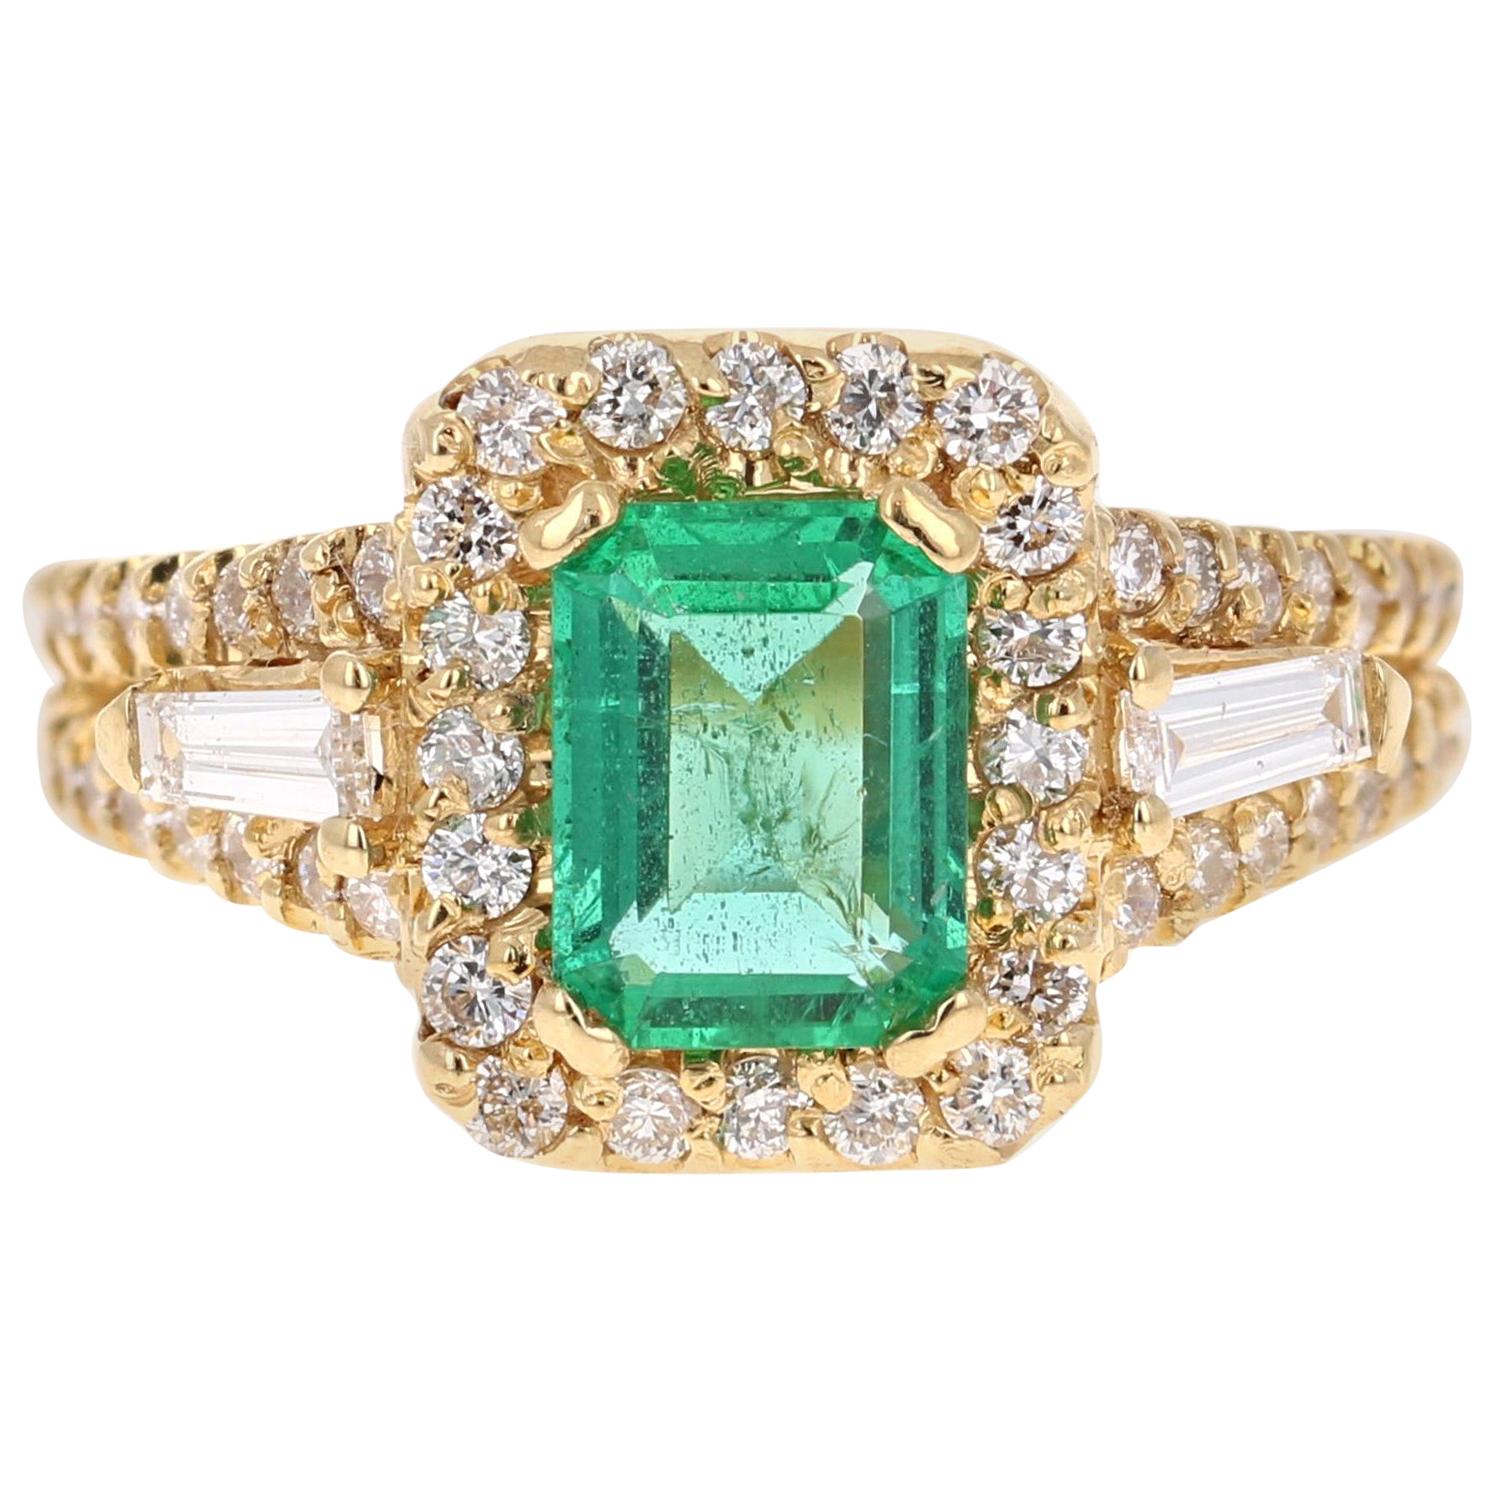 2.36 Carat Emerald Diamond 18 Karat Yellow Gold Engagement Ring GIA Certified 